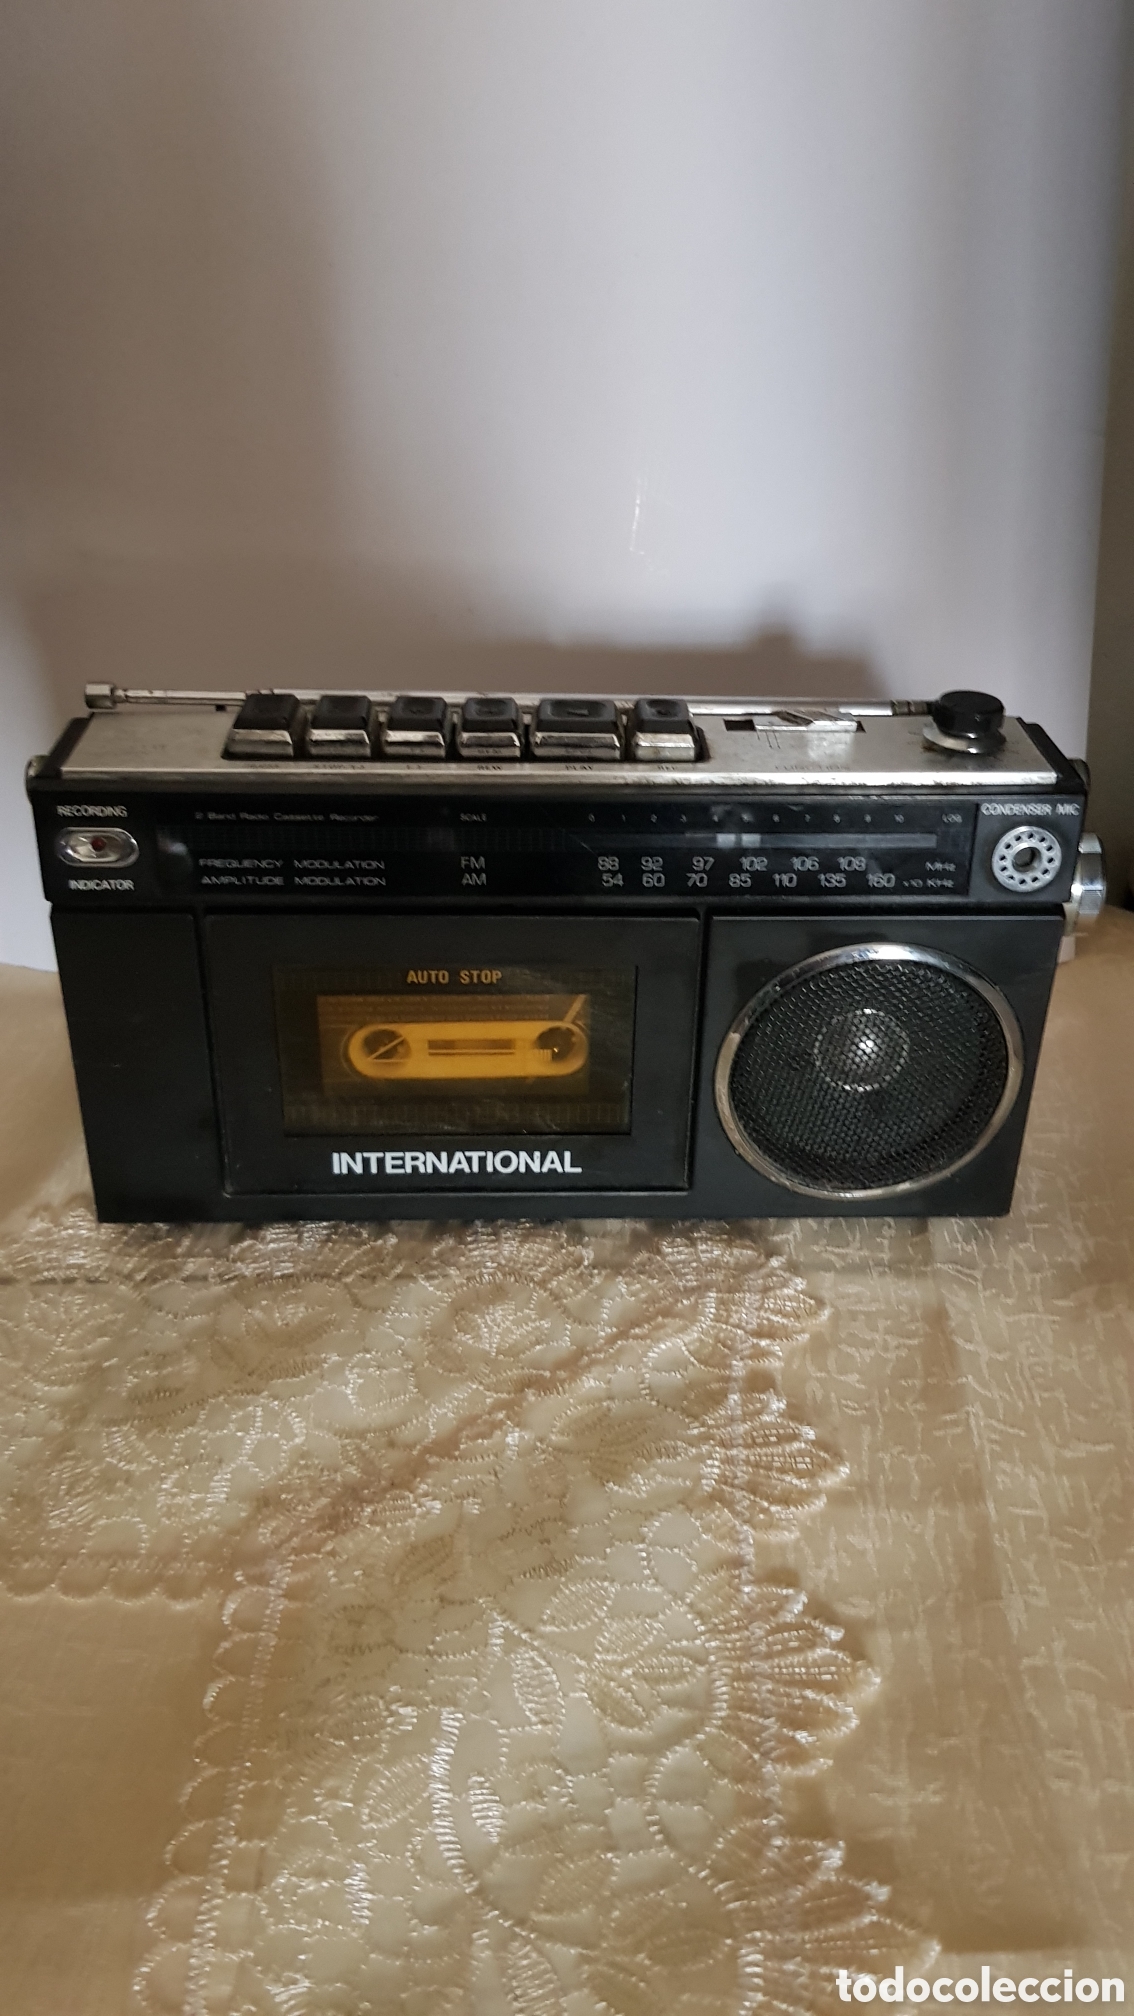 radio cassette international. - Compra venta en todocoleccion